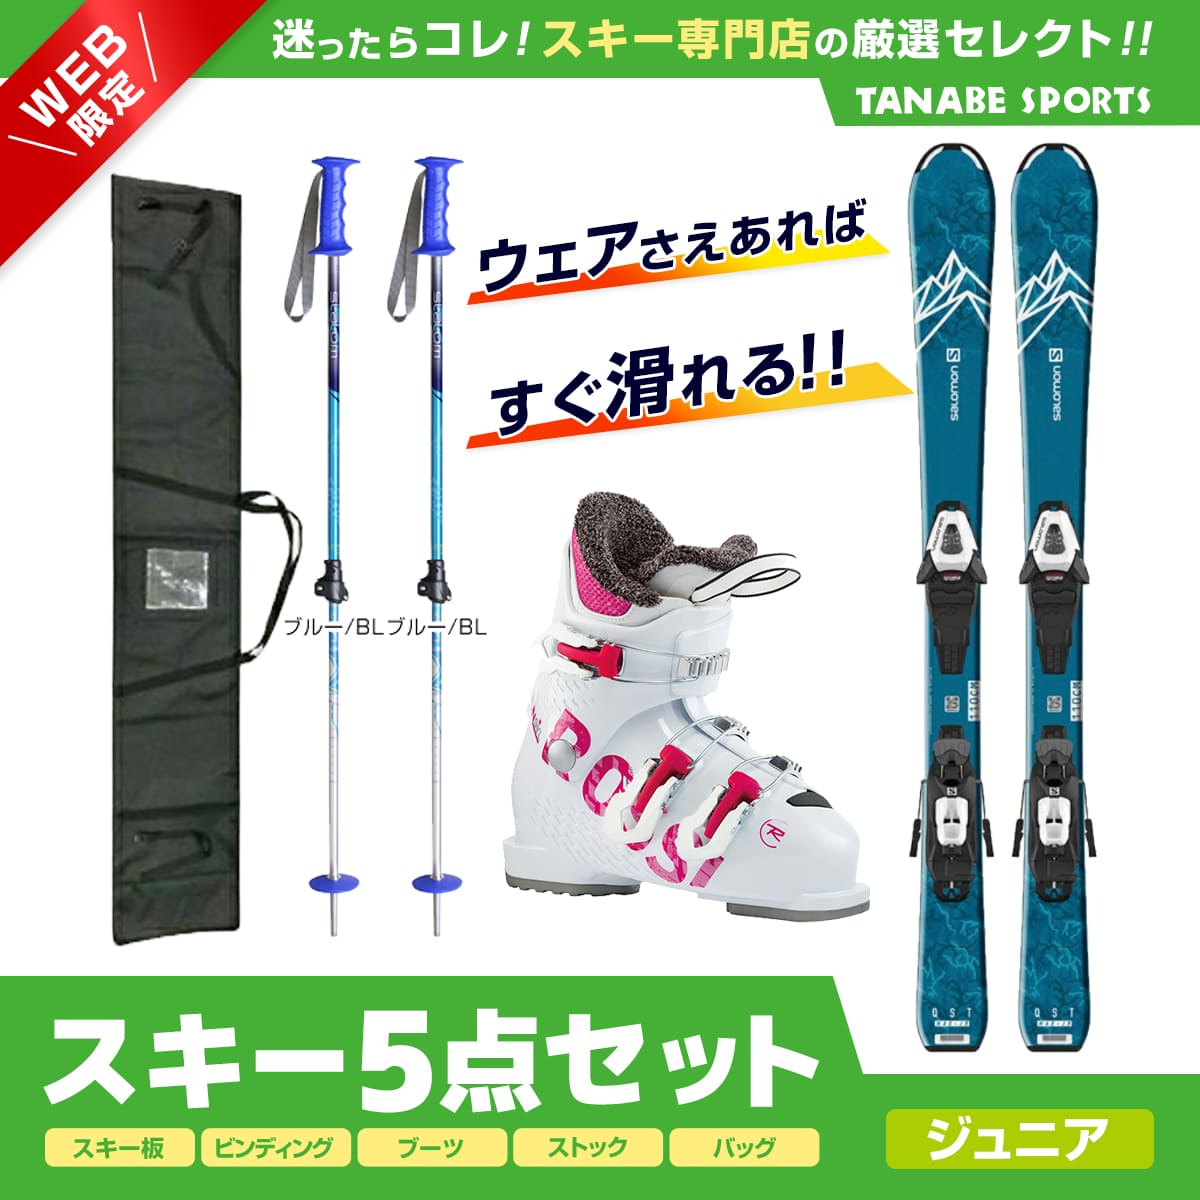 サロモン スキー板 ブーツ セット 別売り可 【オープニングセール